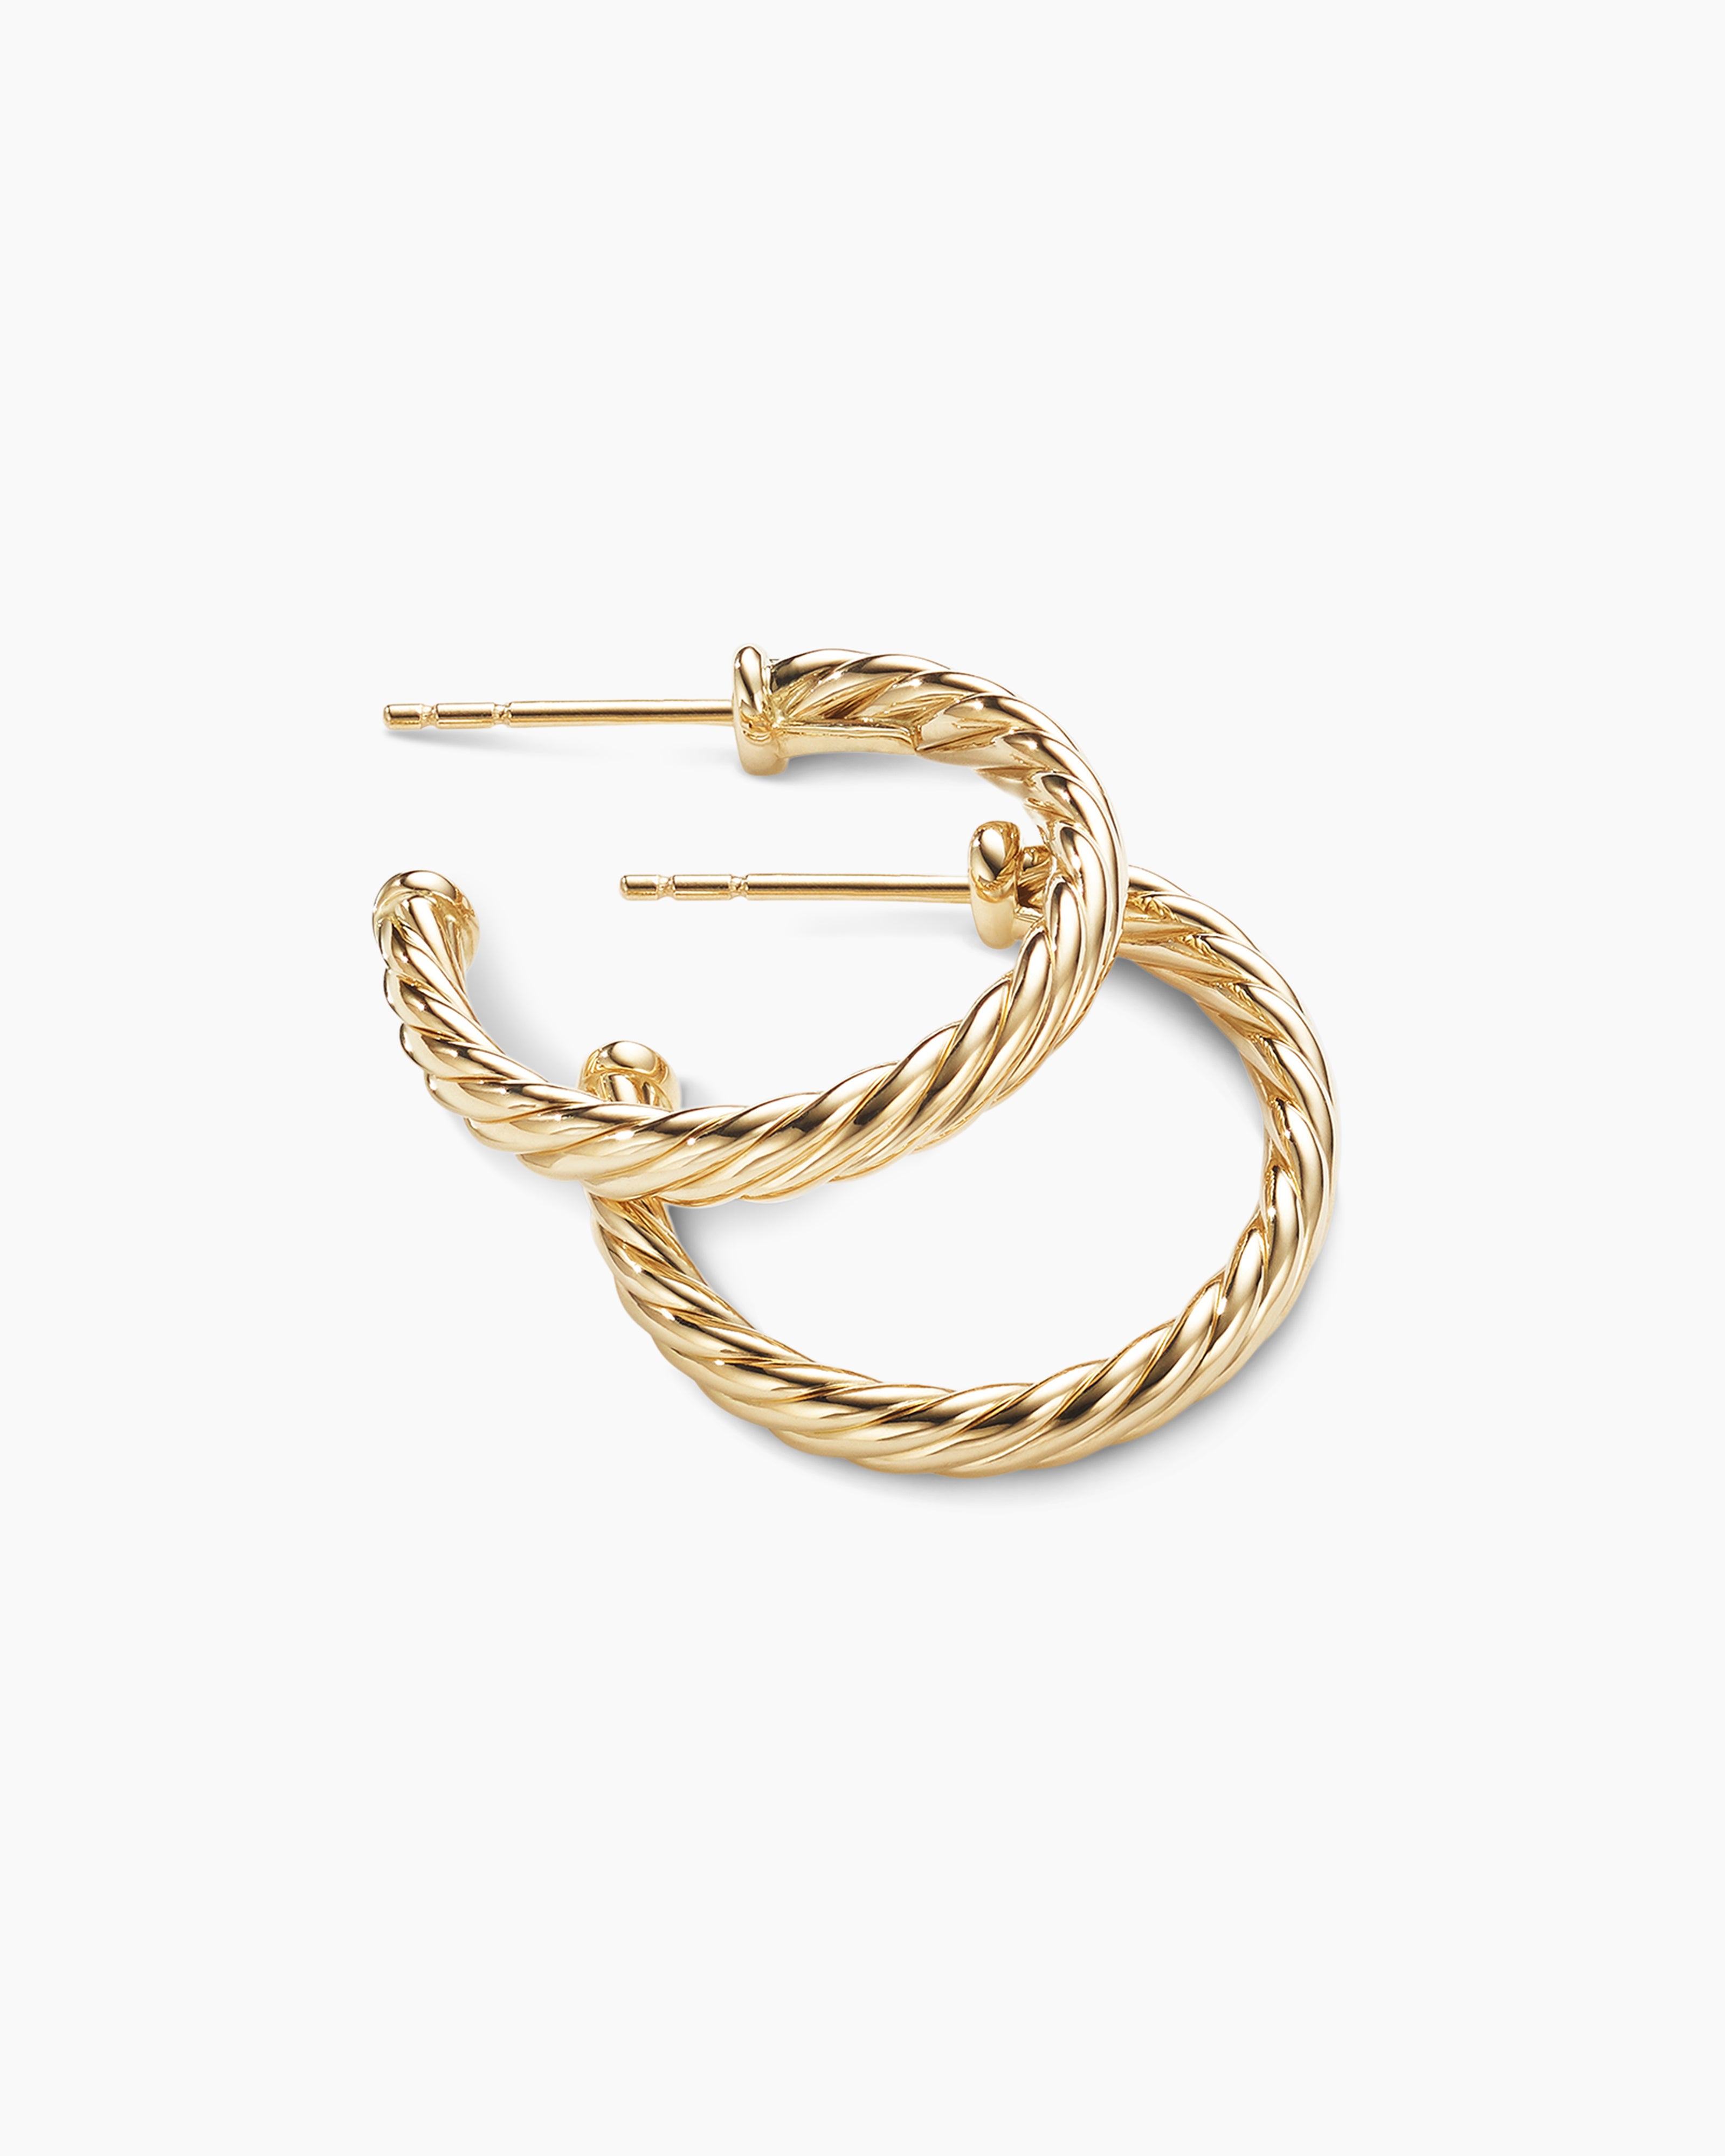 Cablespira® Hoop Earrings in 18K Yellow Gold, 3/4in | David Yurman EU